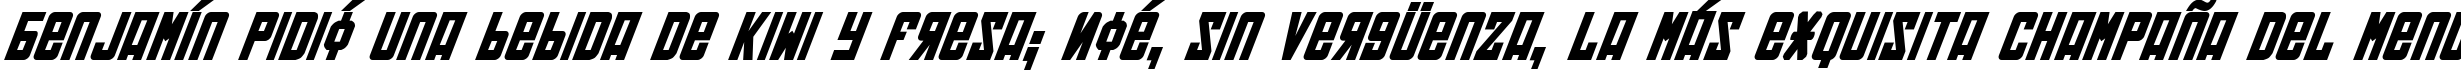 Пример написания шрифтом Soviet Bold Italic текста на испанском